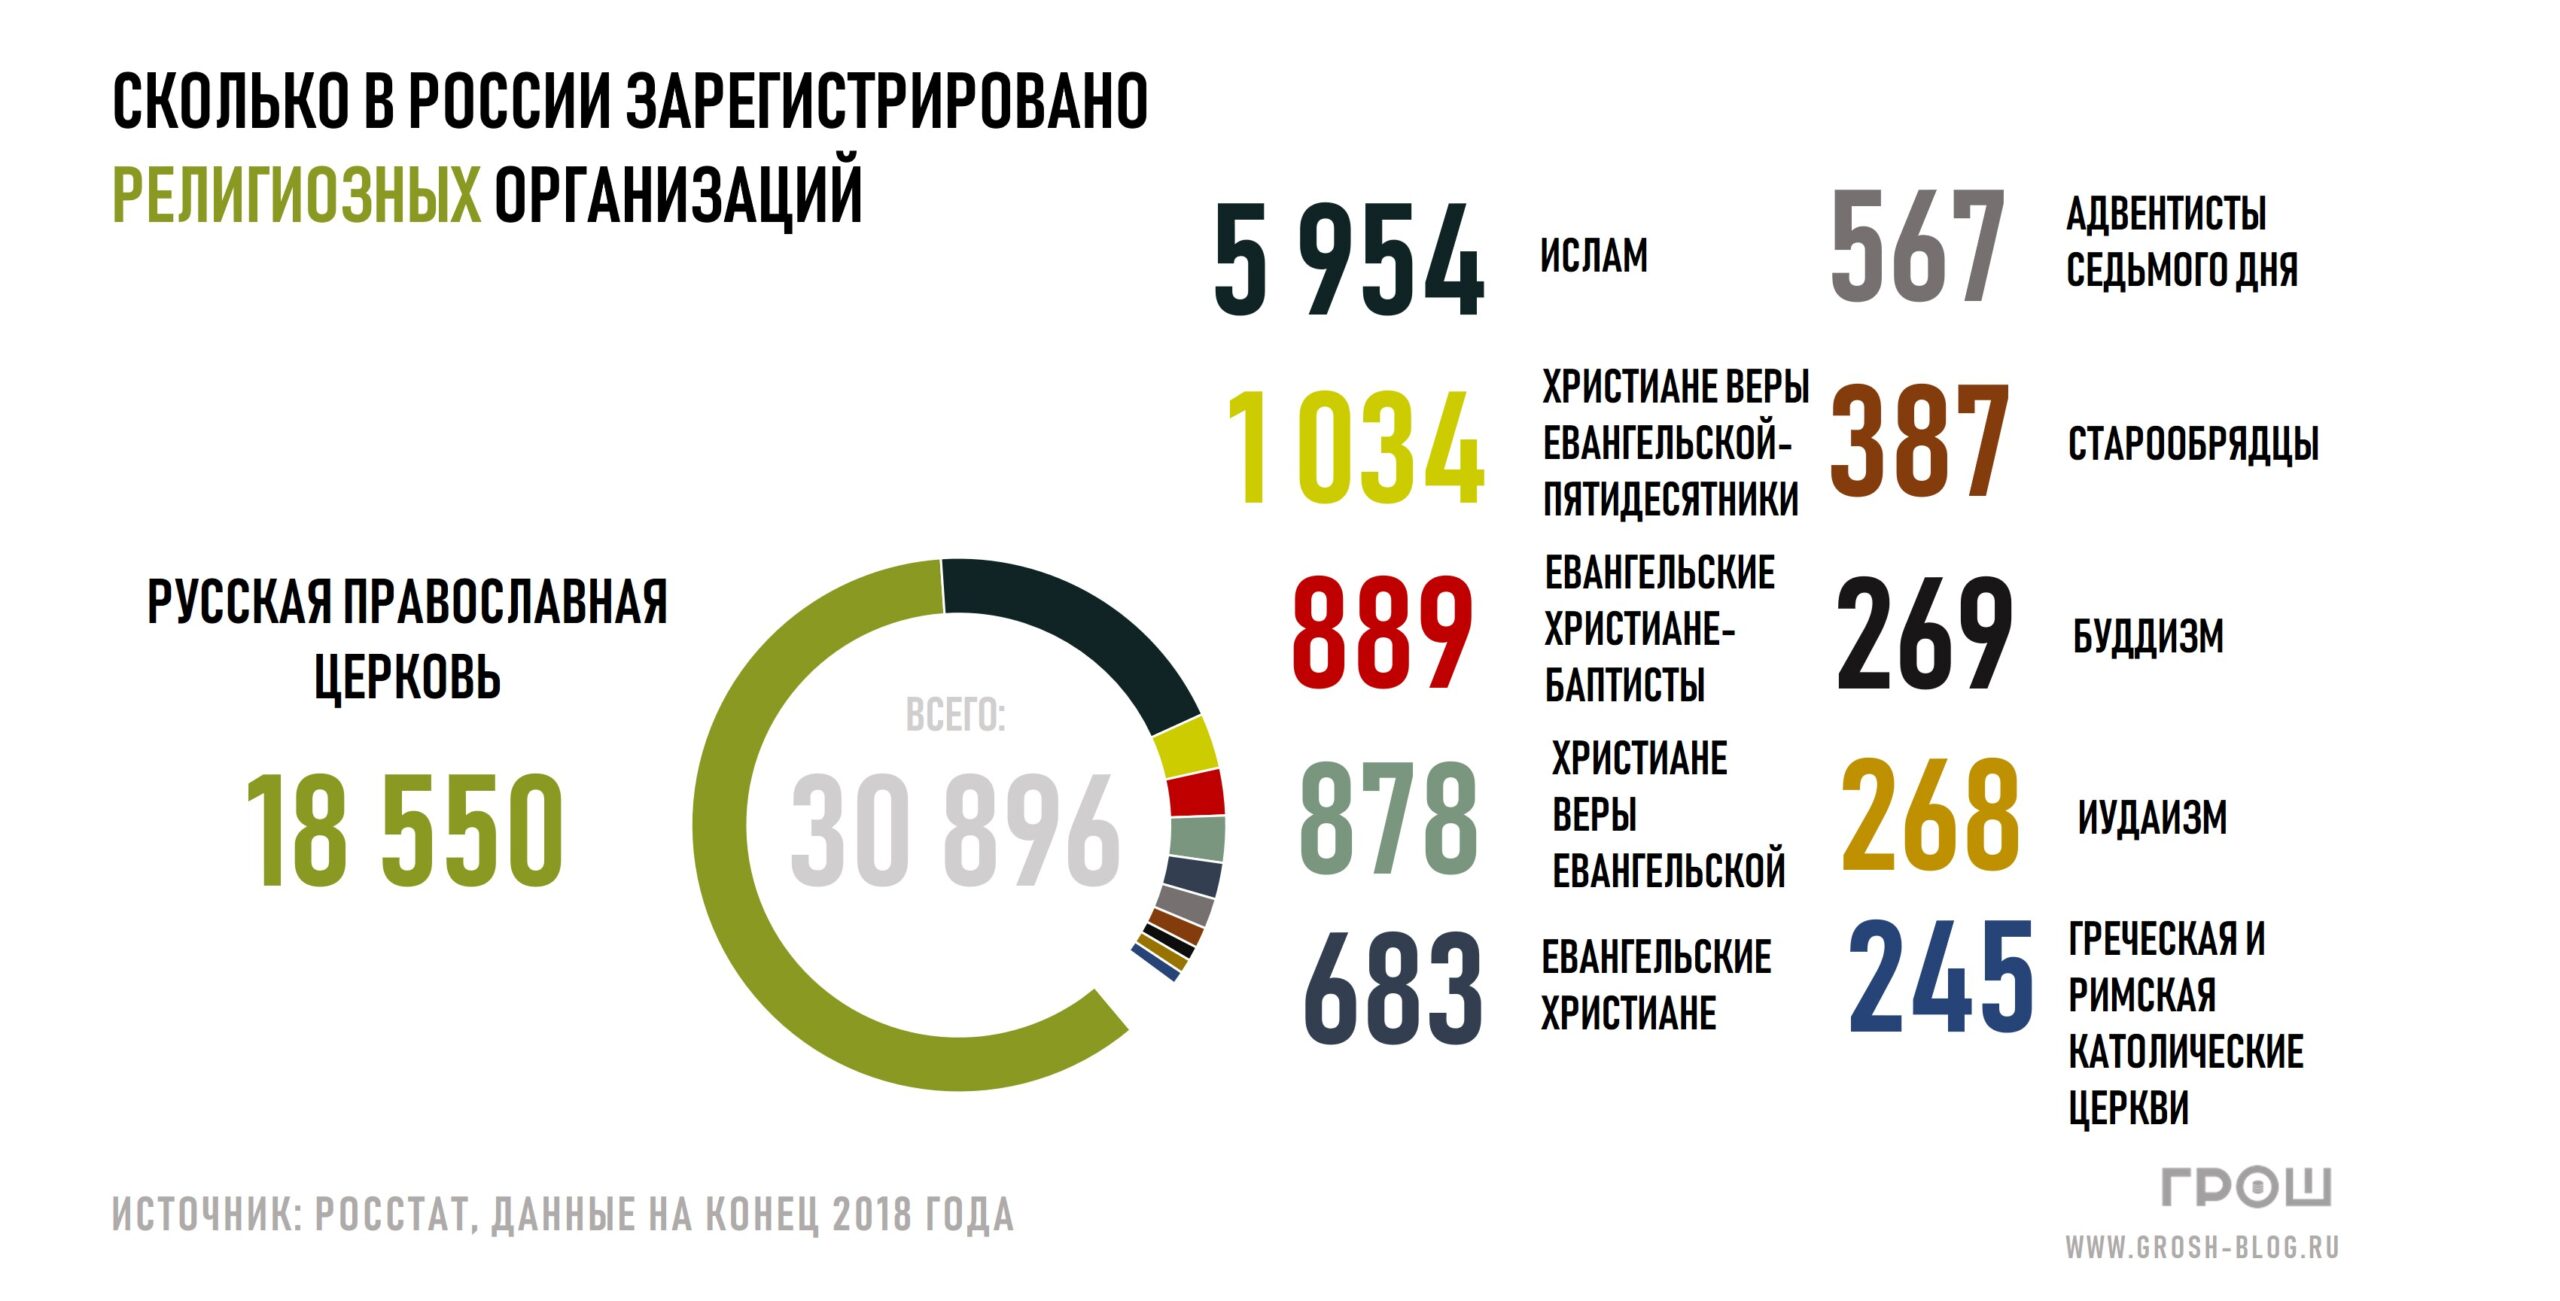 Инфографика: сколько в России зарегистрировано религиозных организаций